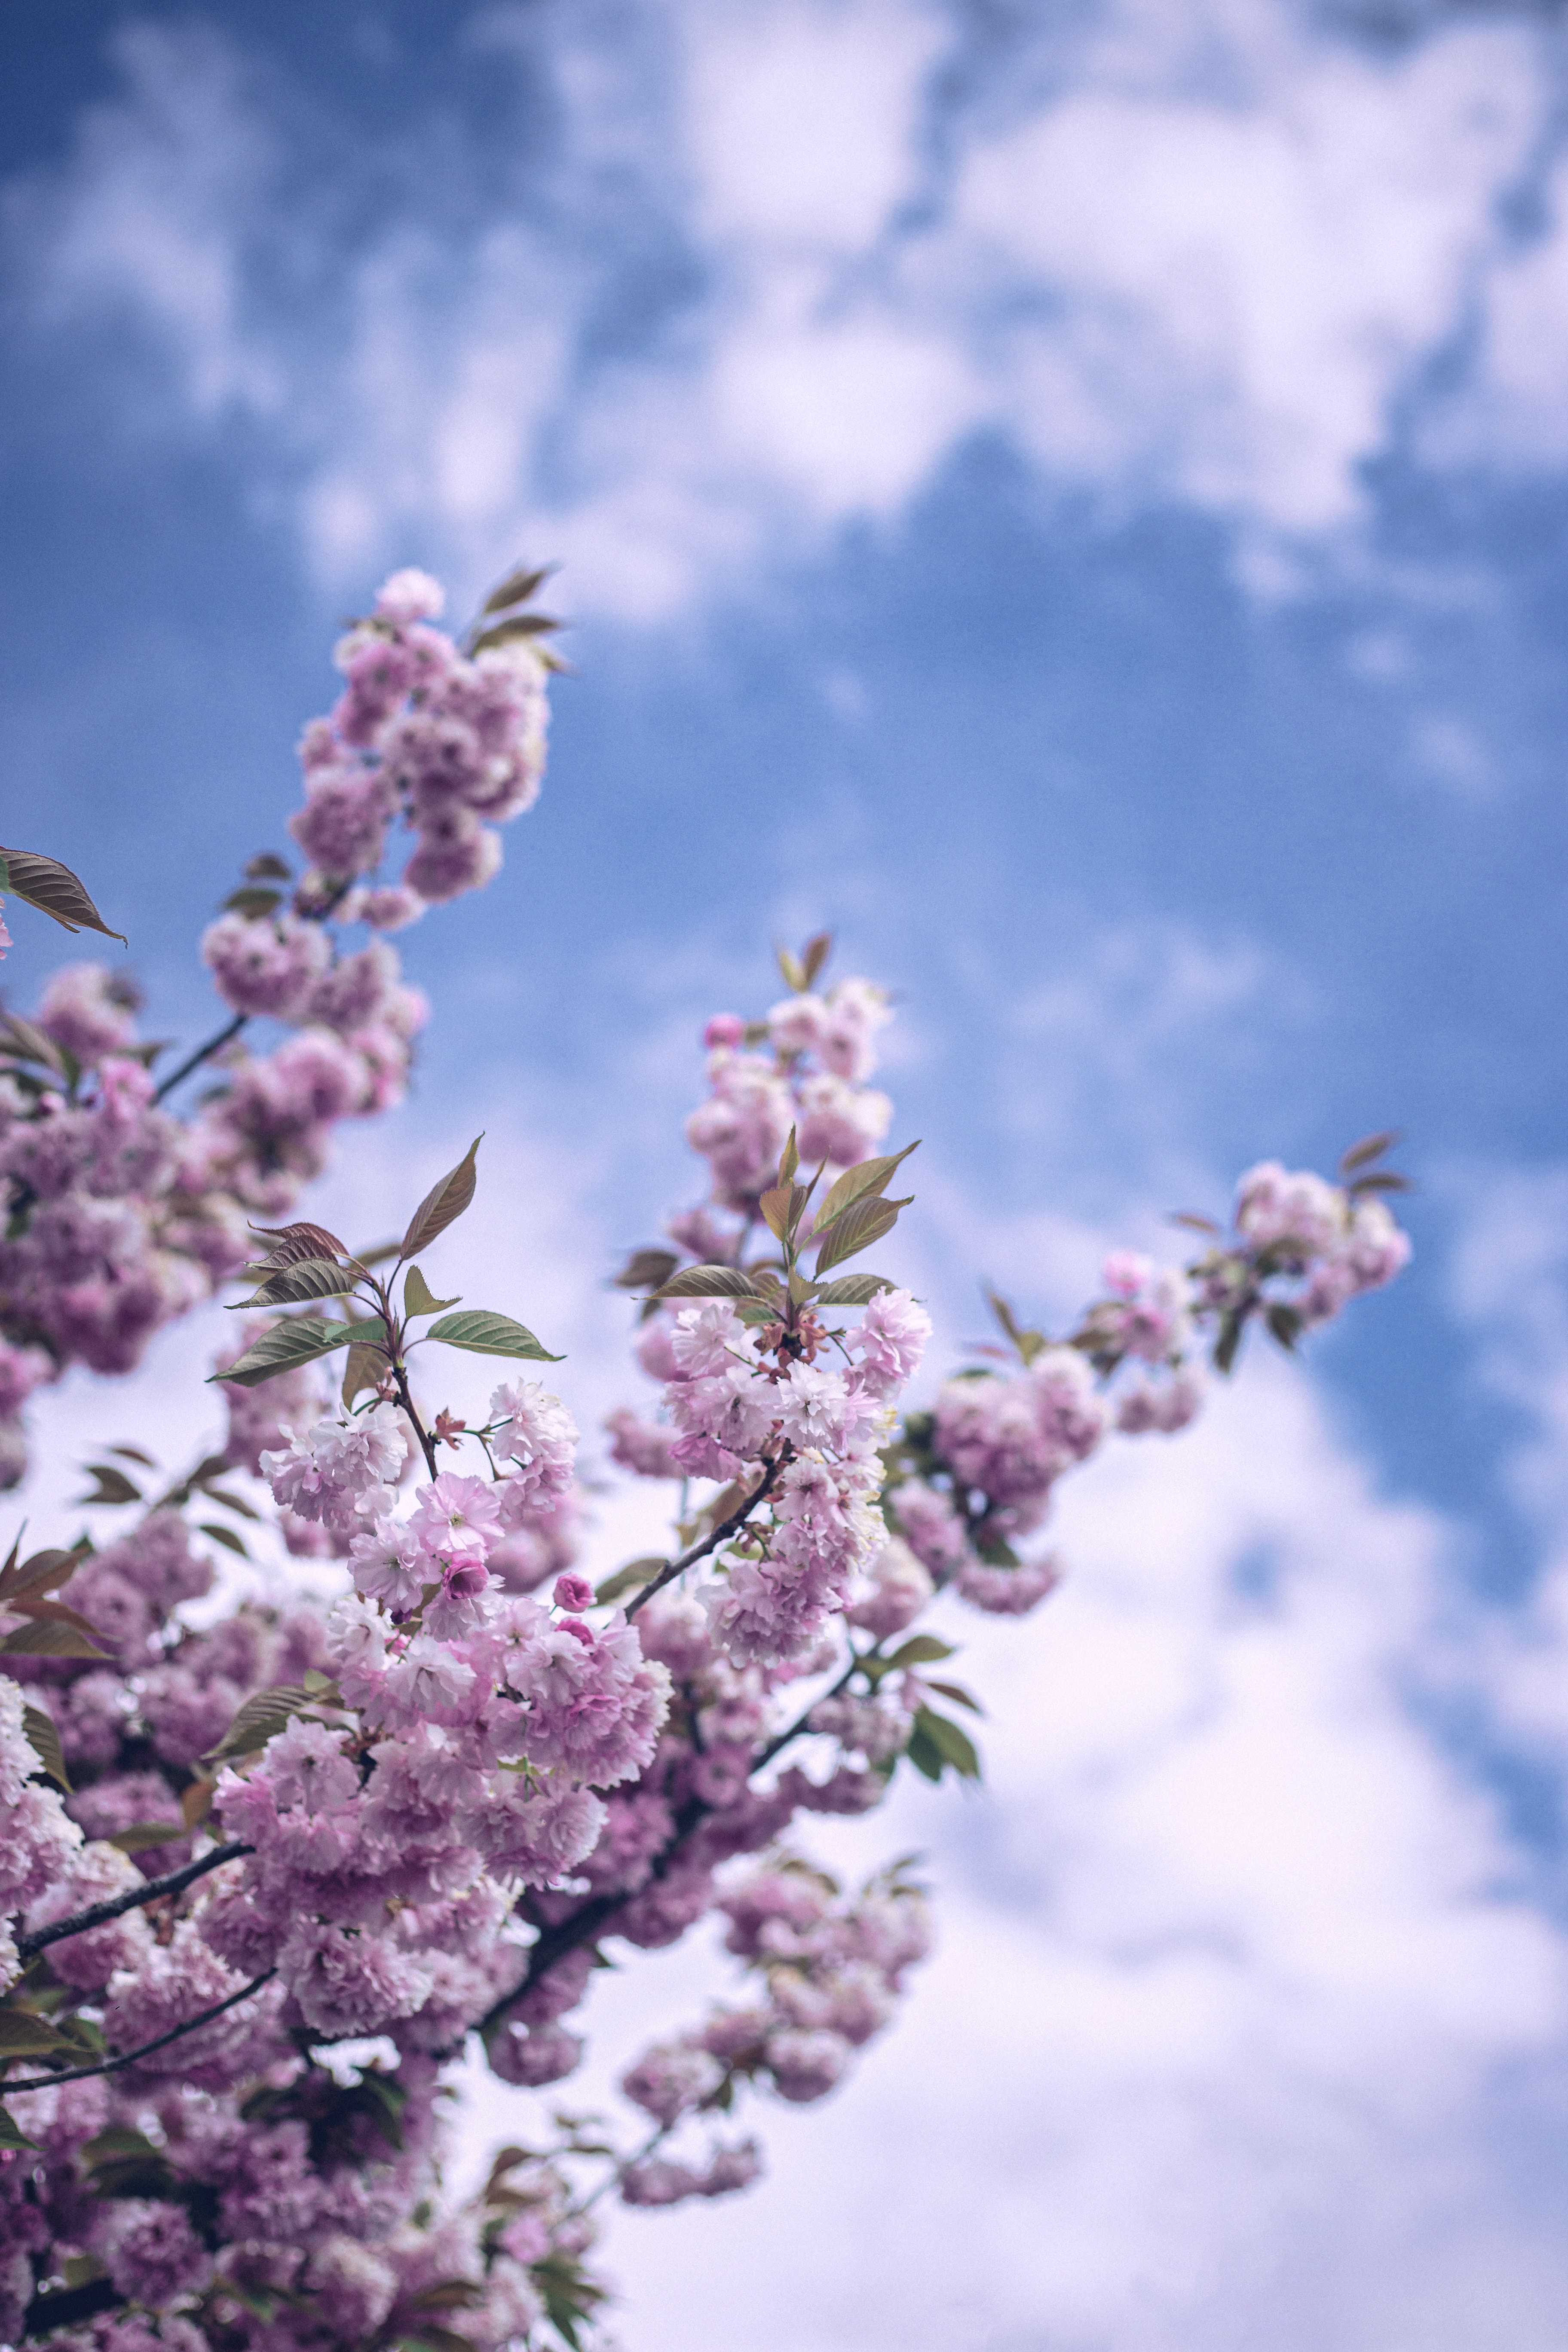 135553 免費下載壁紙 花卉, 天空, 云, 分支, 盛开, 开花, 春天 屏保和圖片